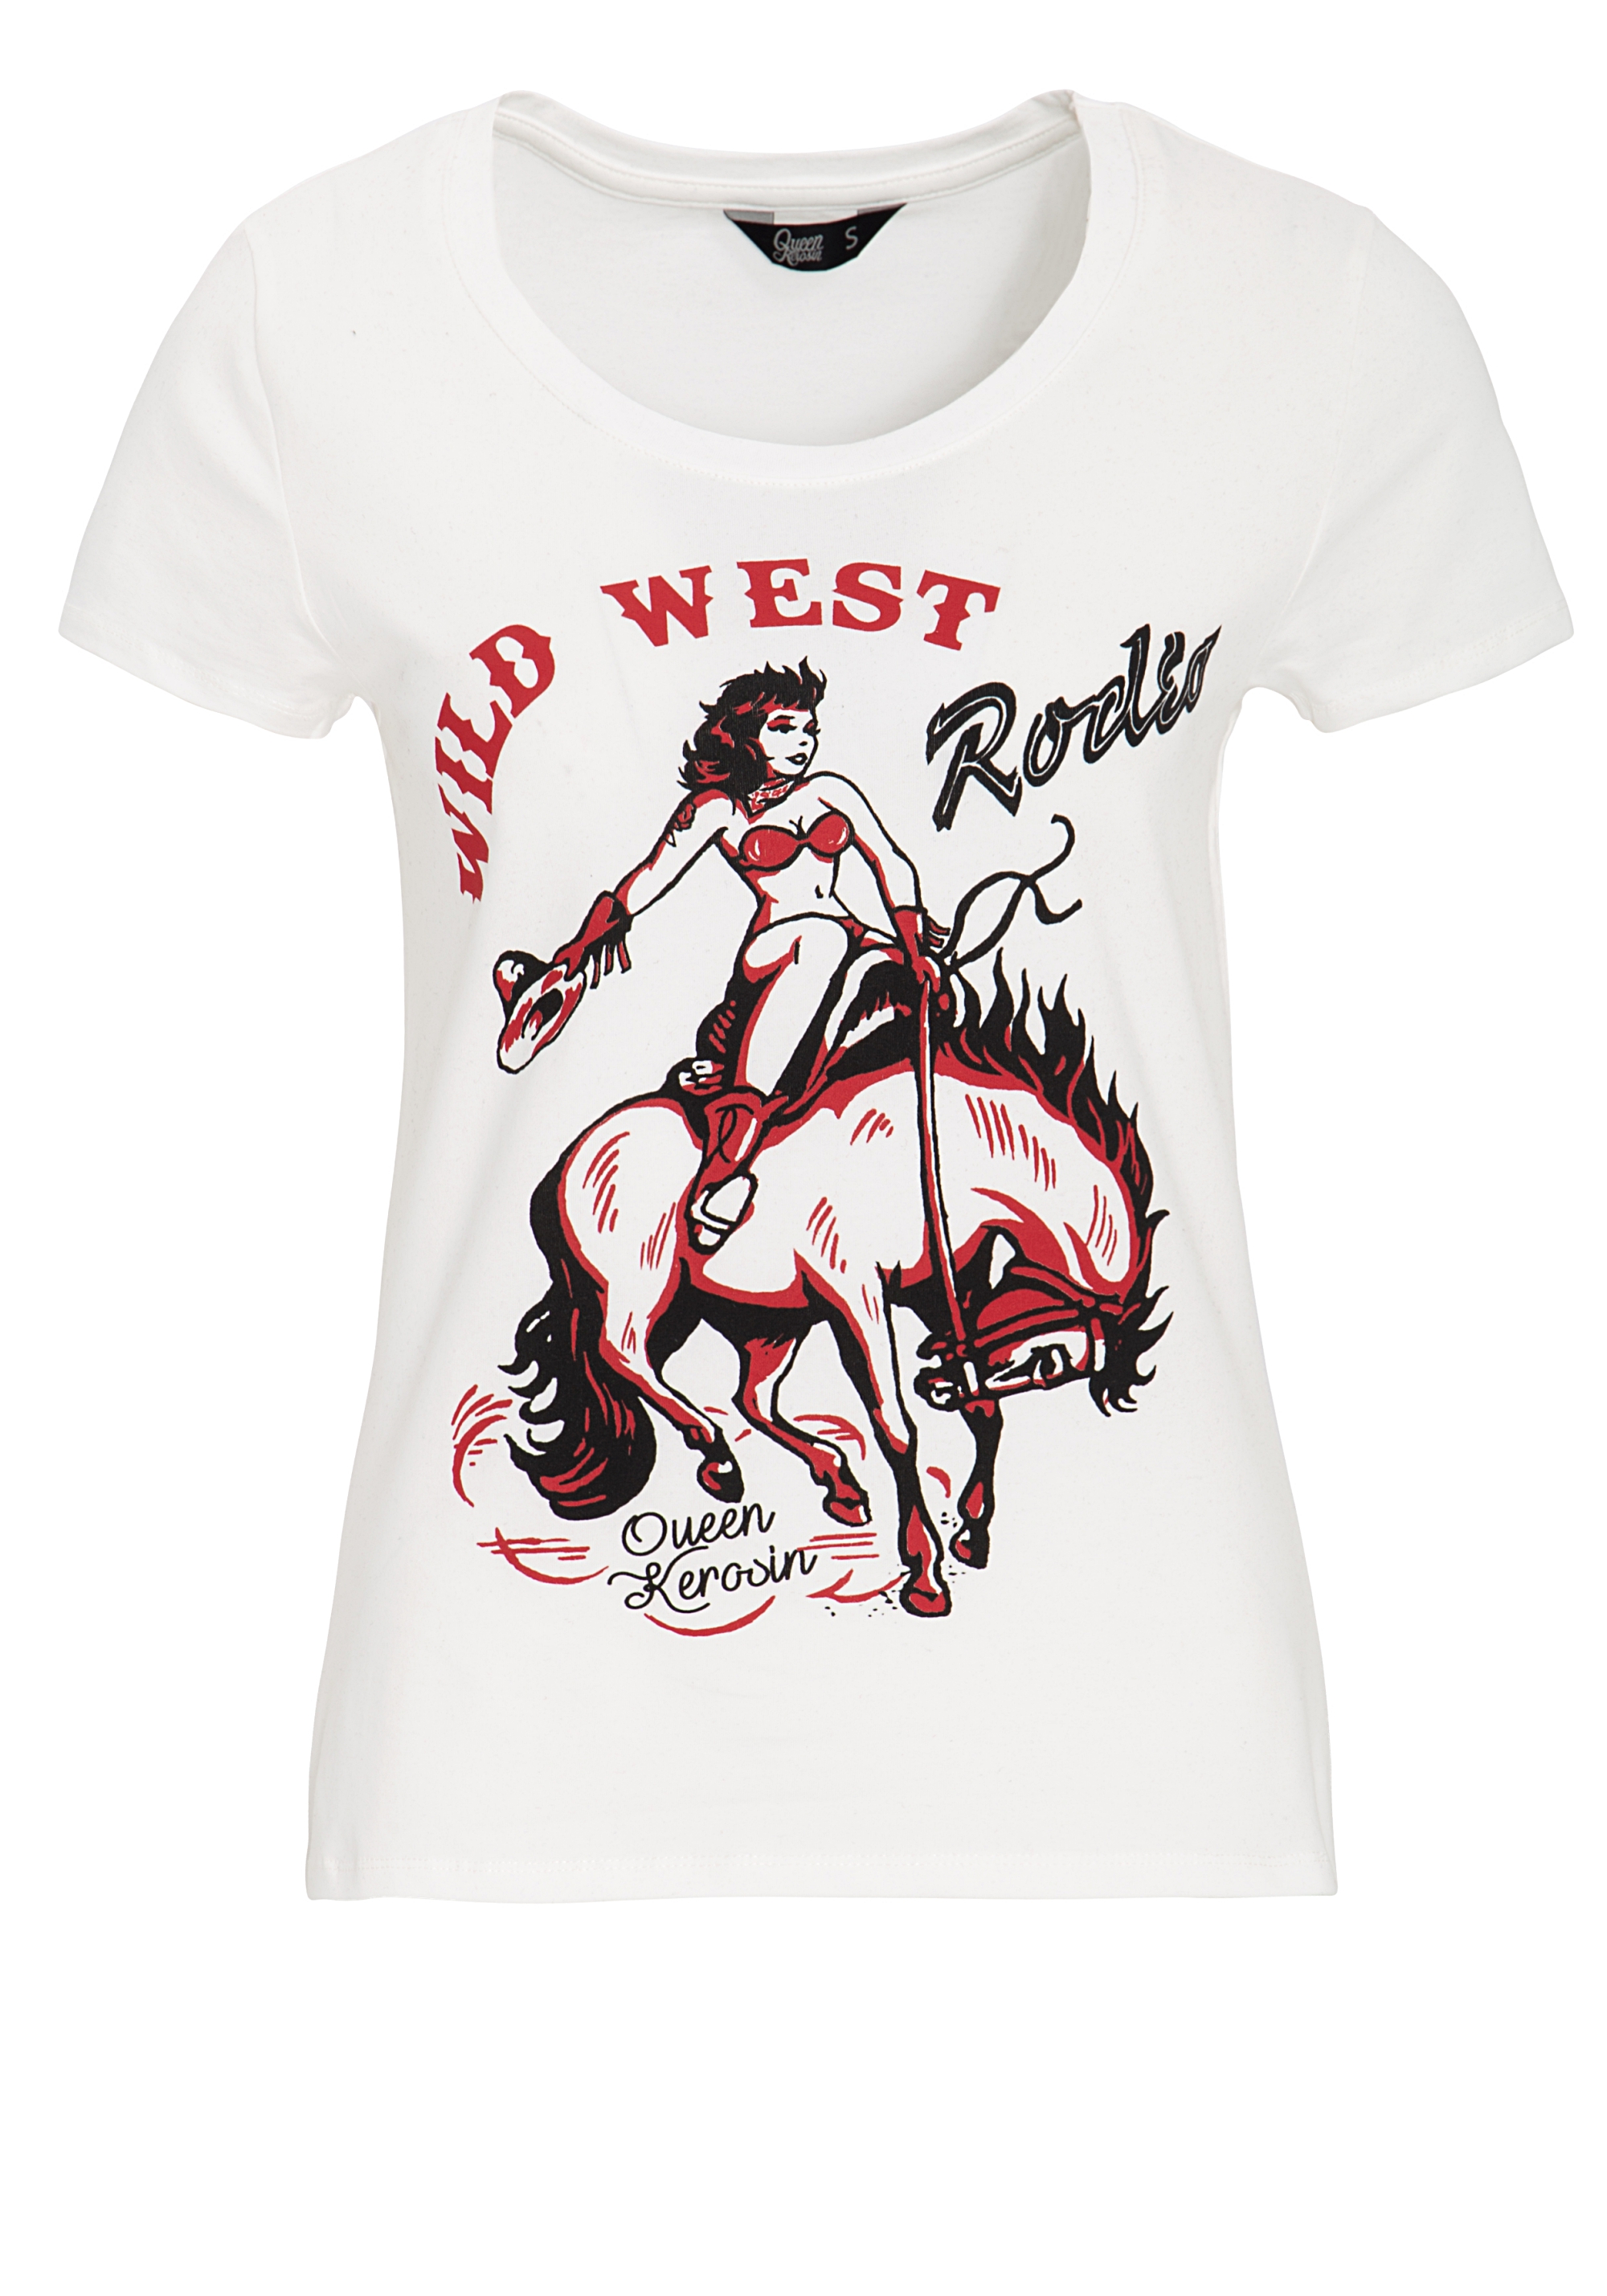 Queen Kerosin T-Shirt - Wild West XL